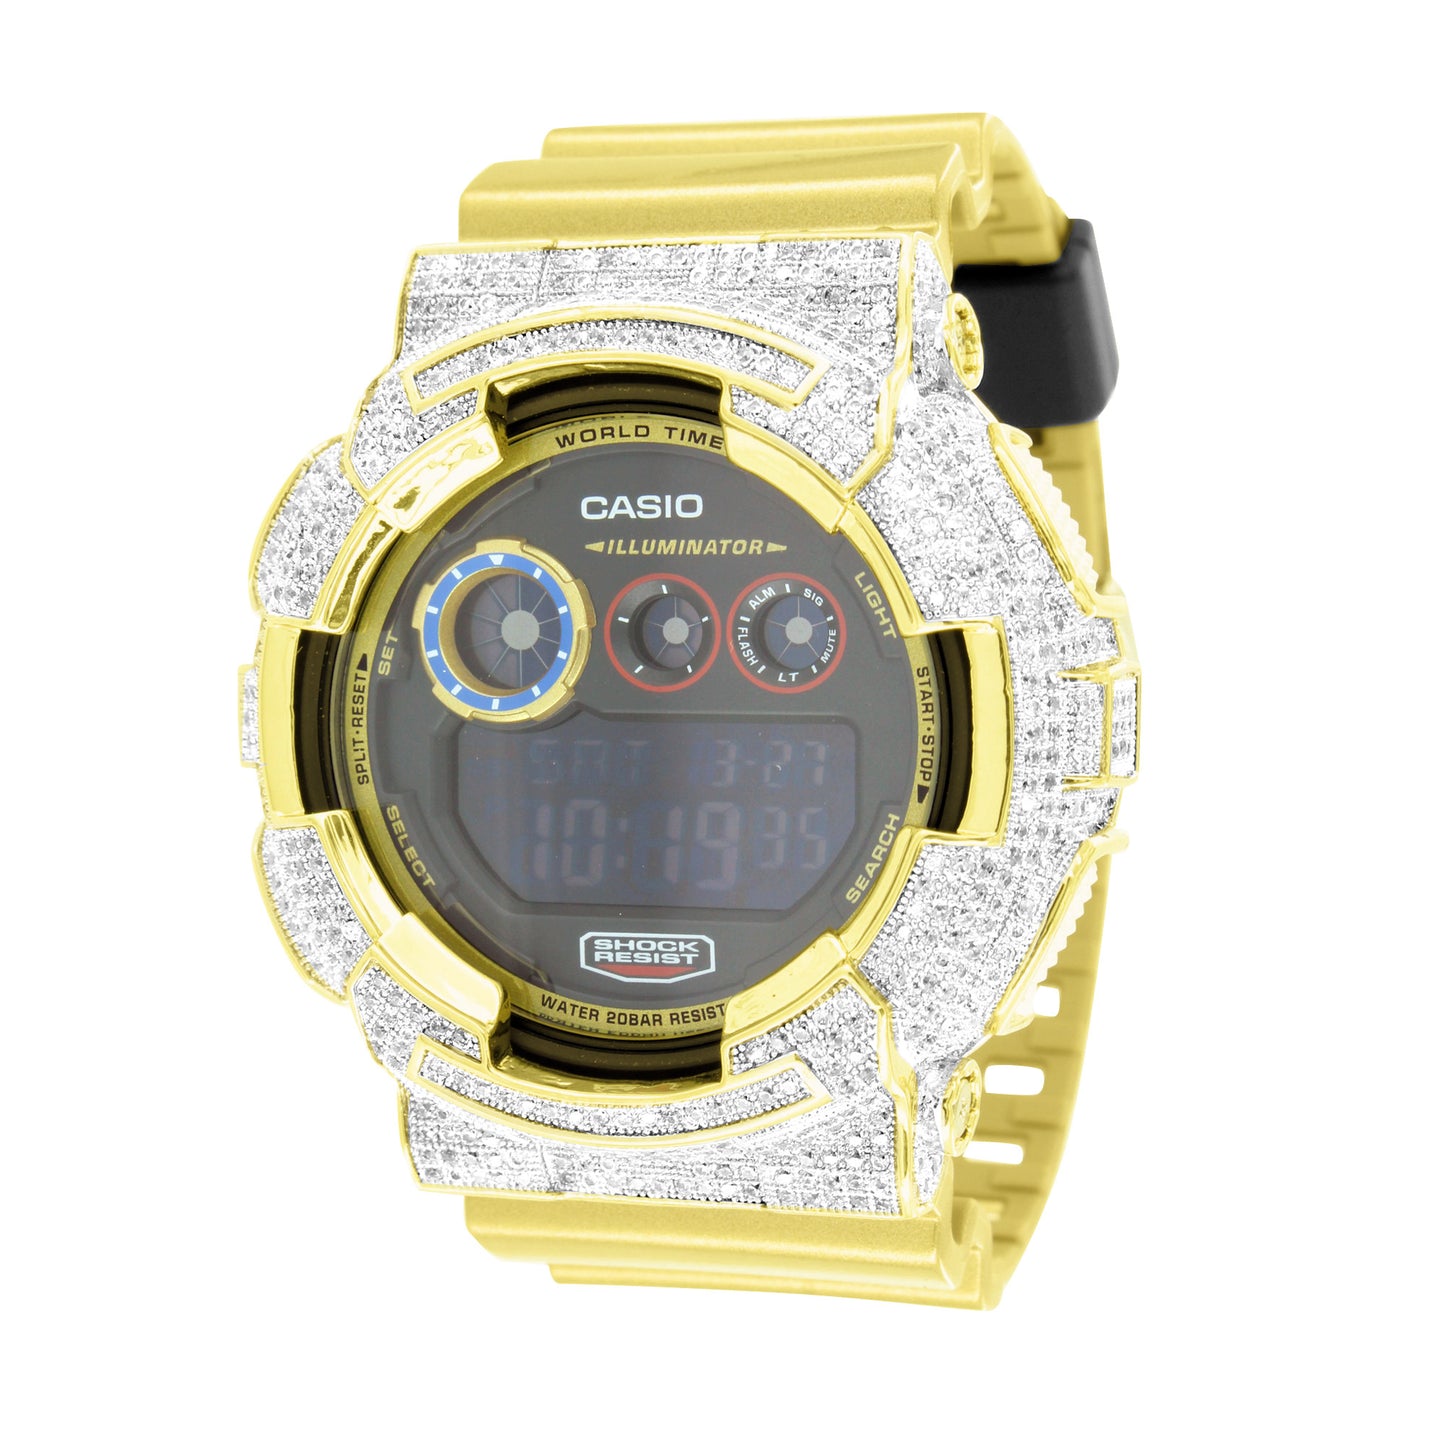 G-Shock Metallic Gold Watch GD120CS-1